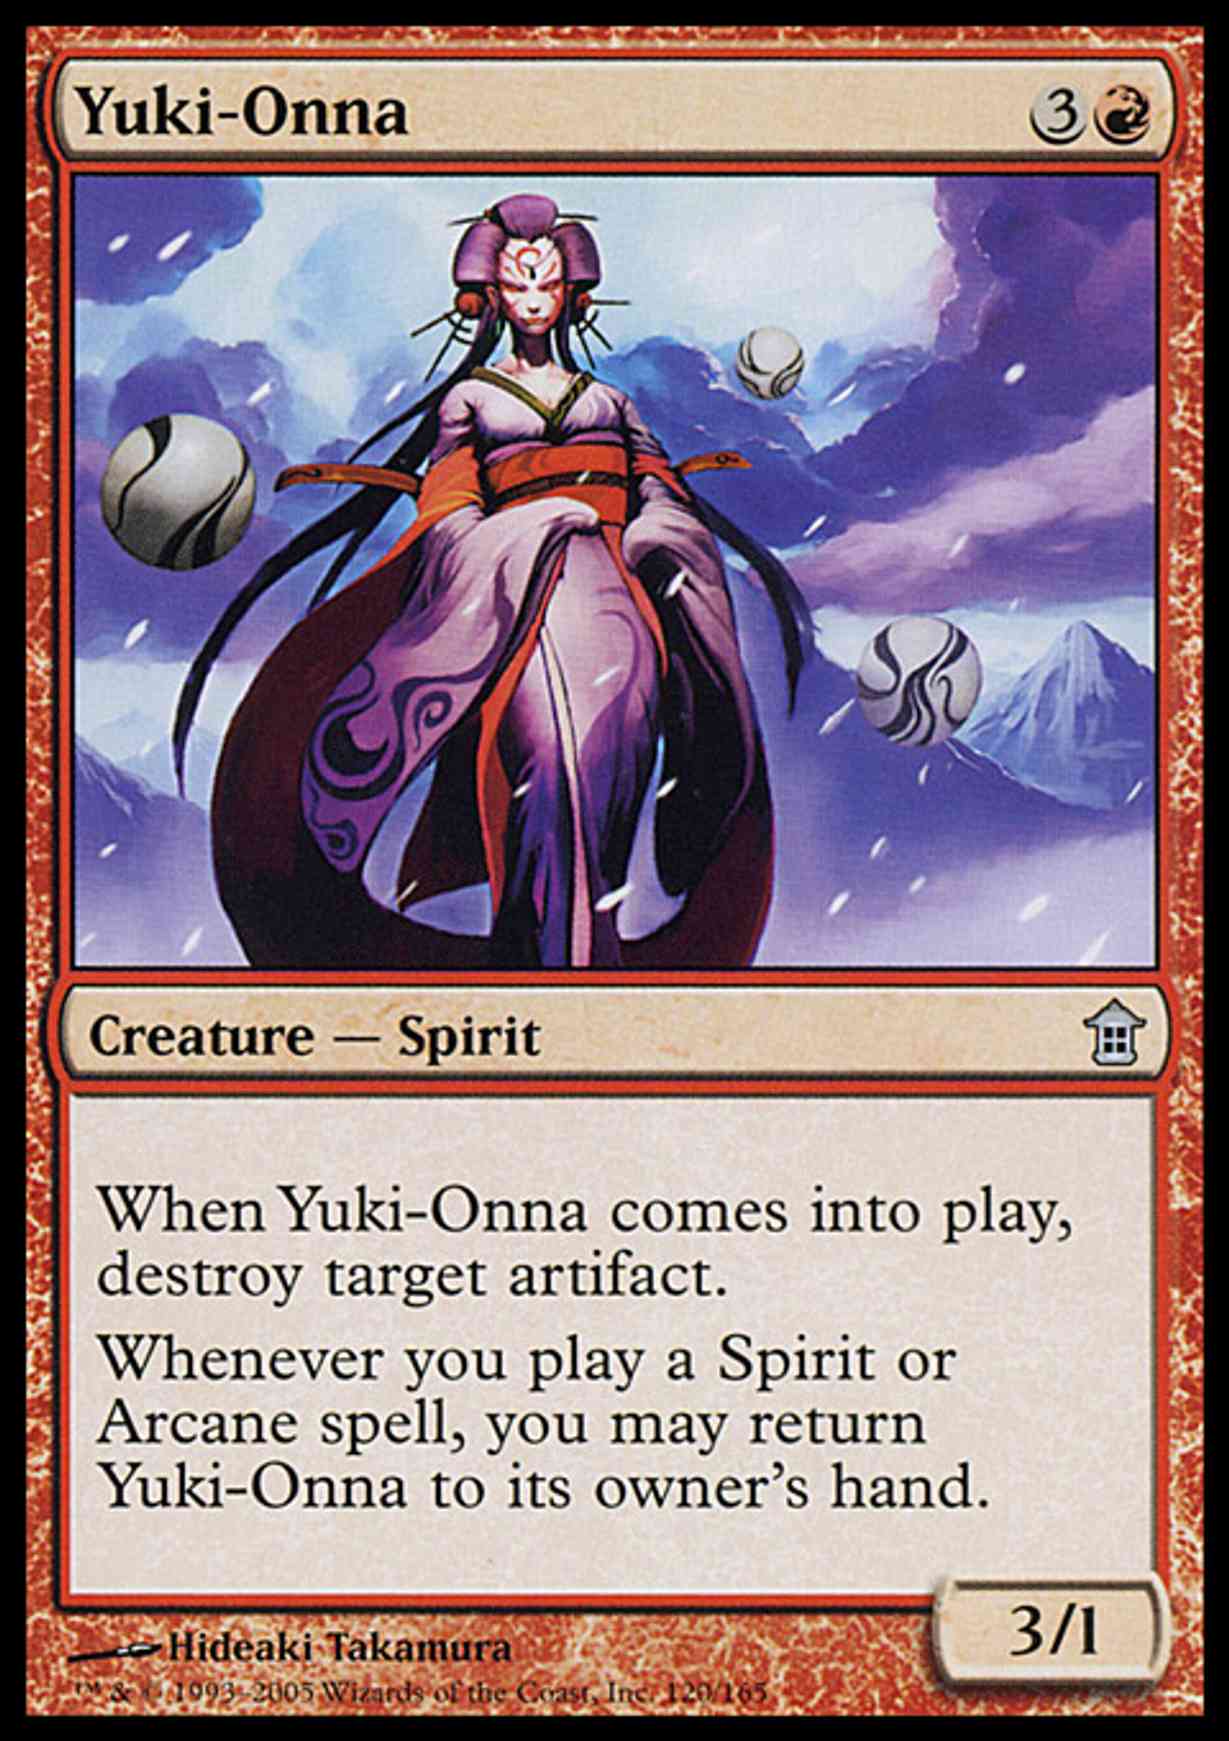 Yuki-Onna magic card front